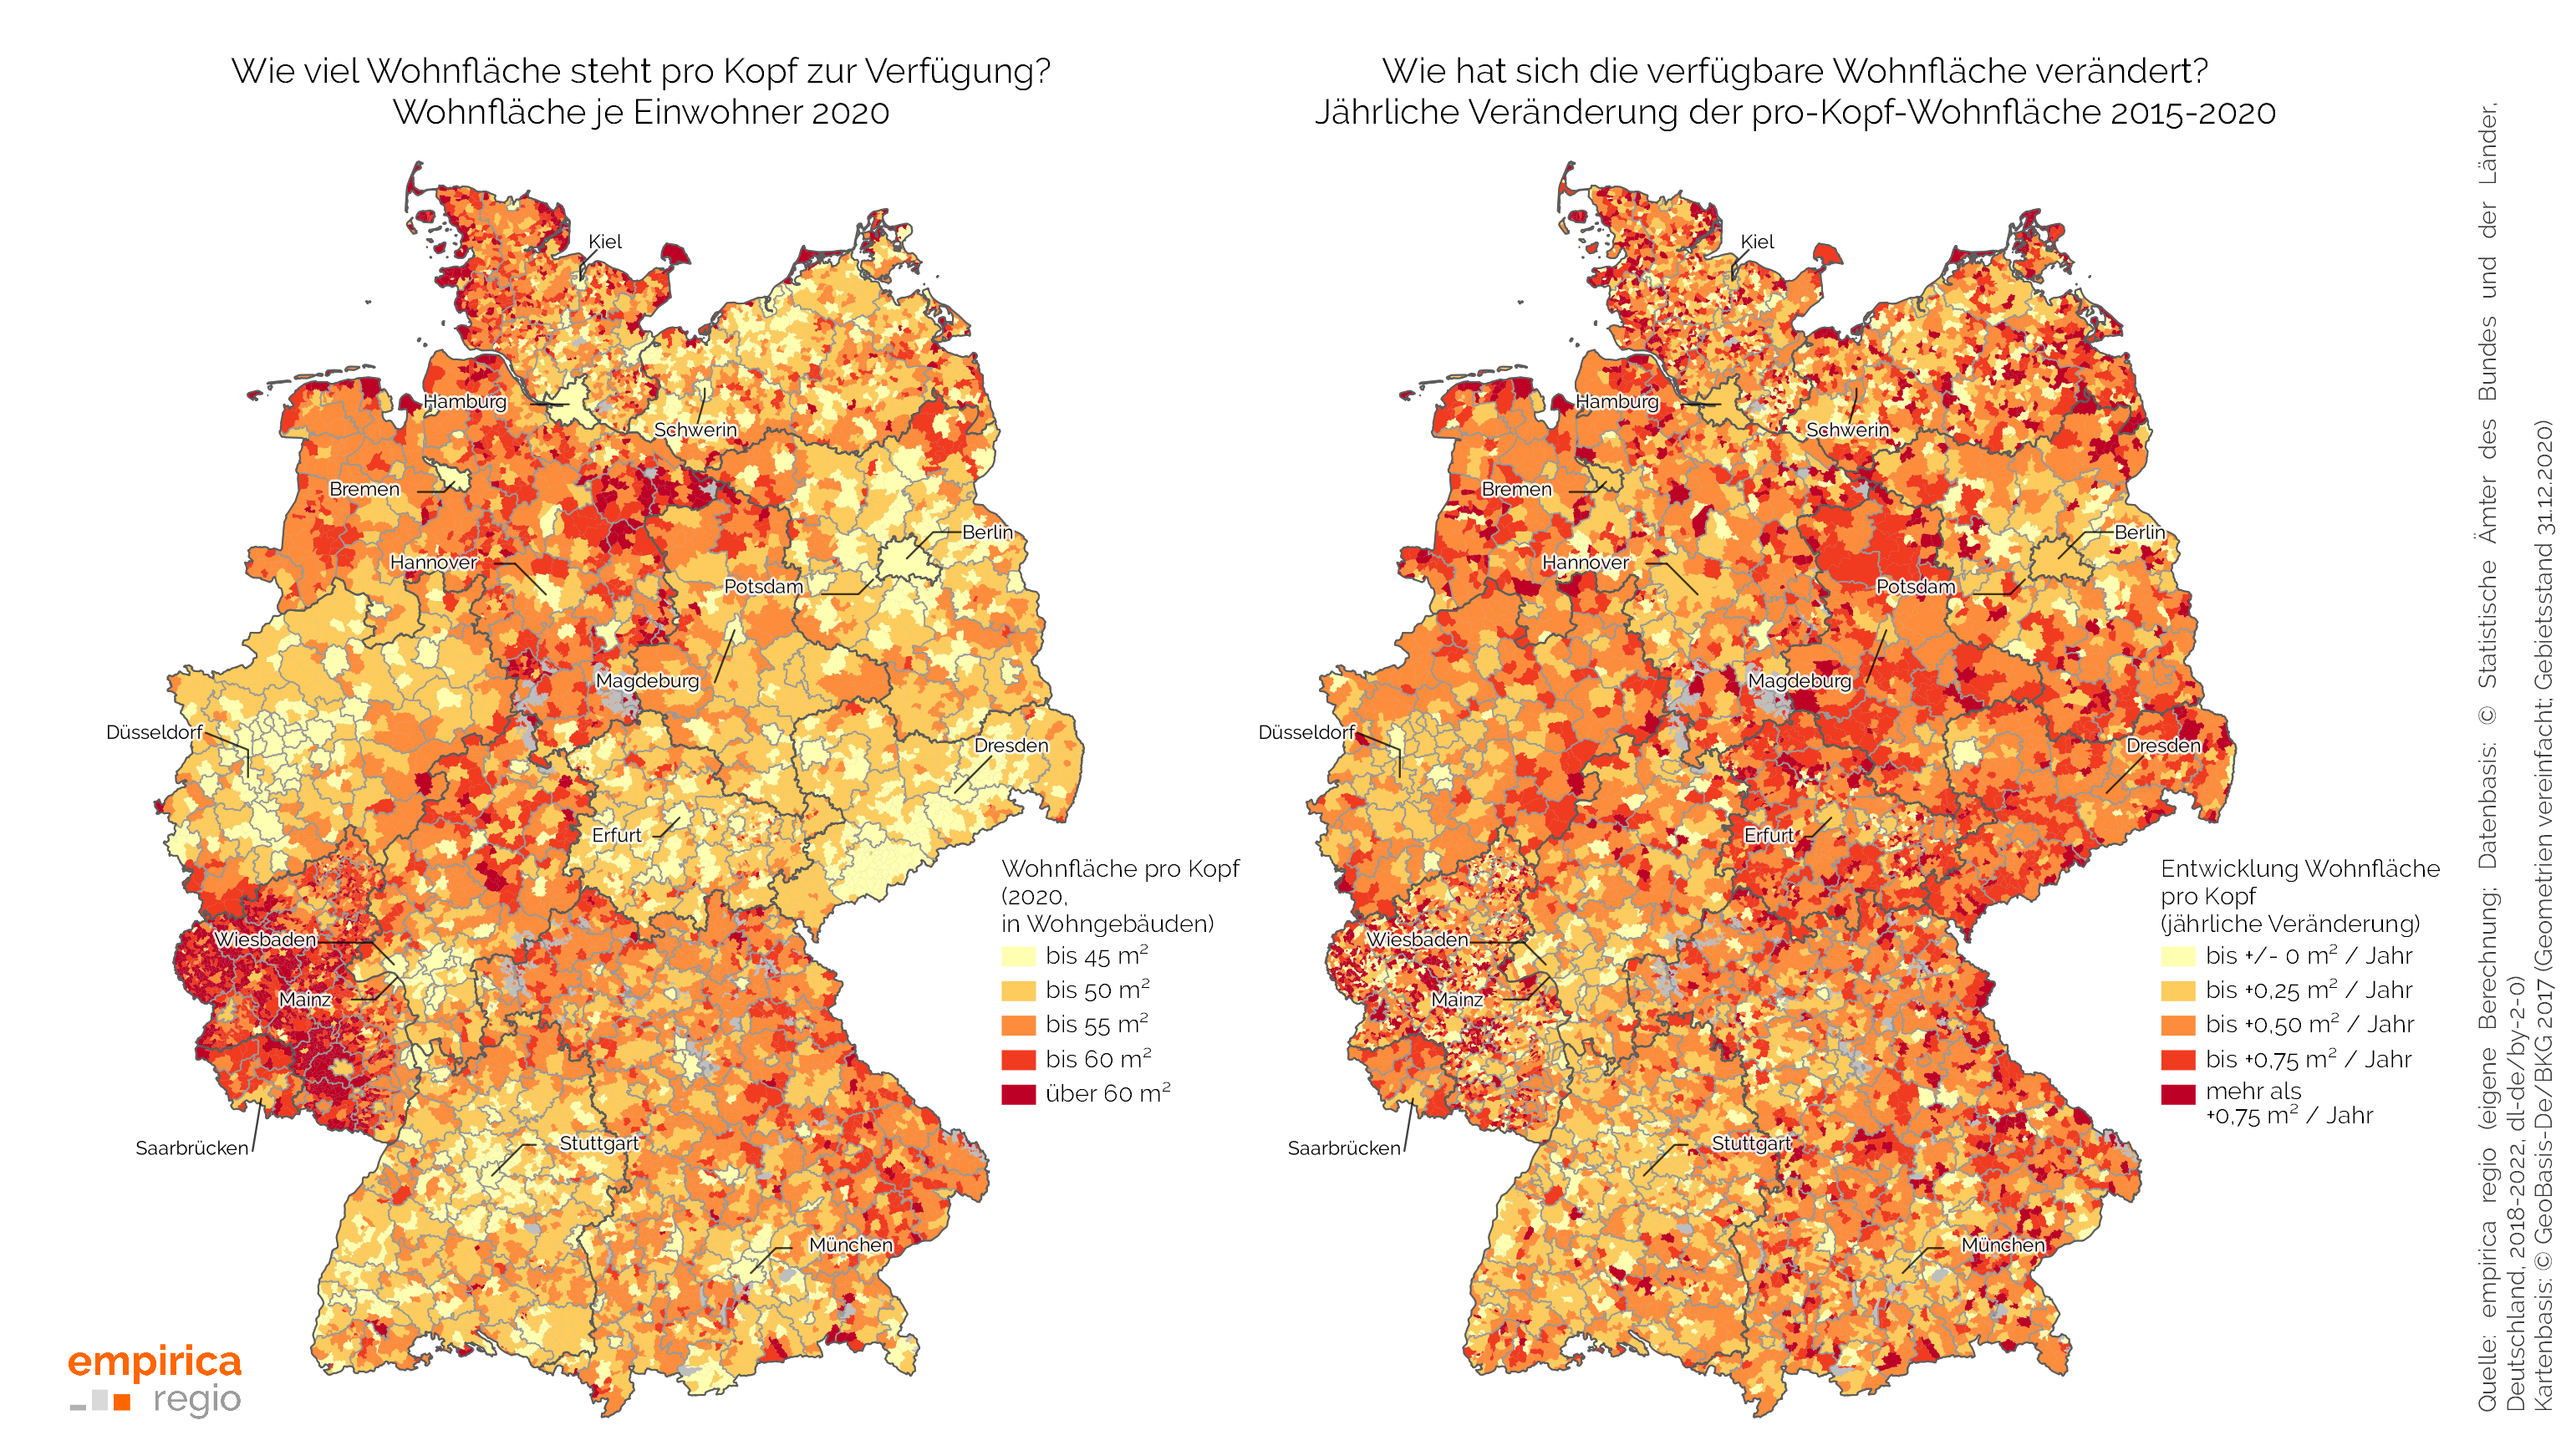 Verfügbare Wohnfläche pro Kopf in den Gemeinden in Deutschland